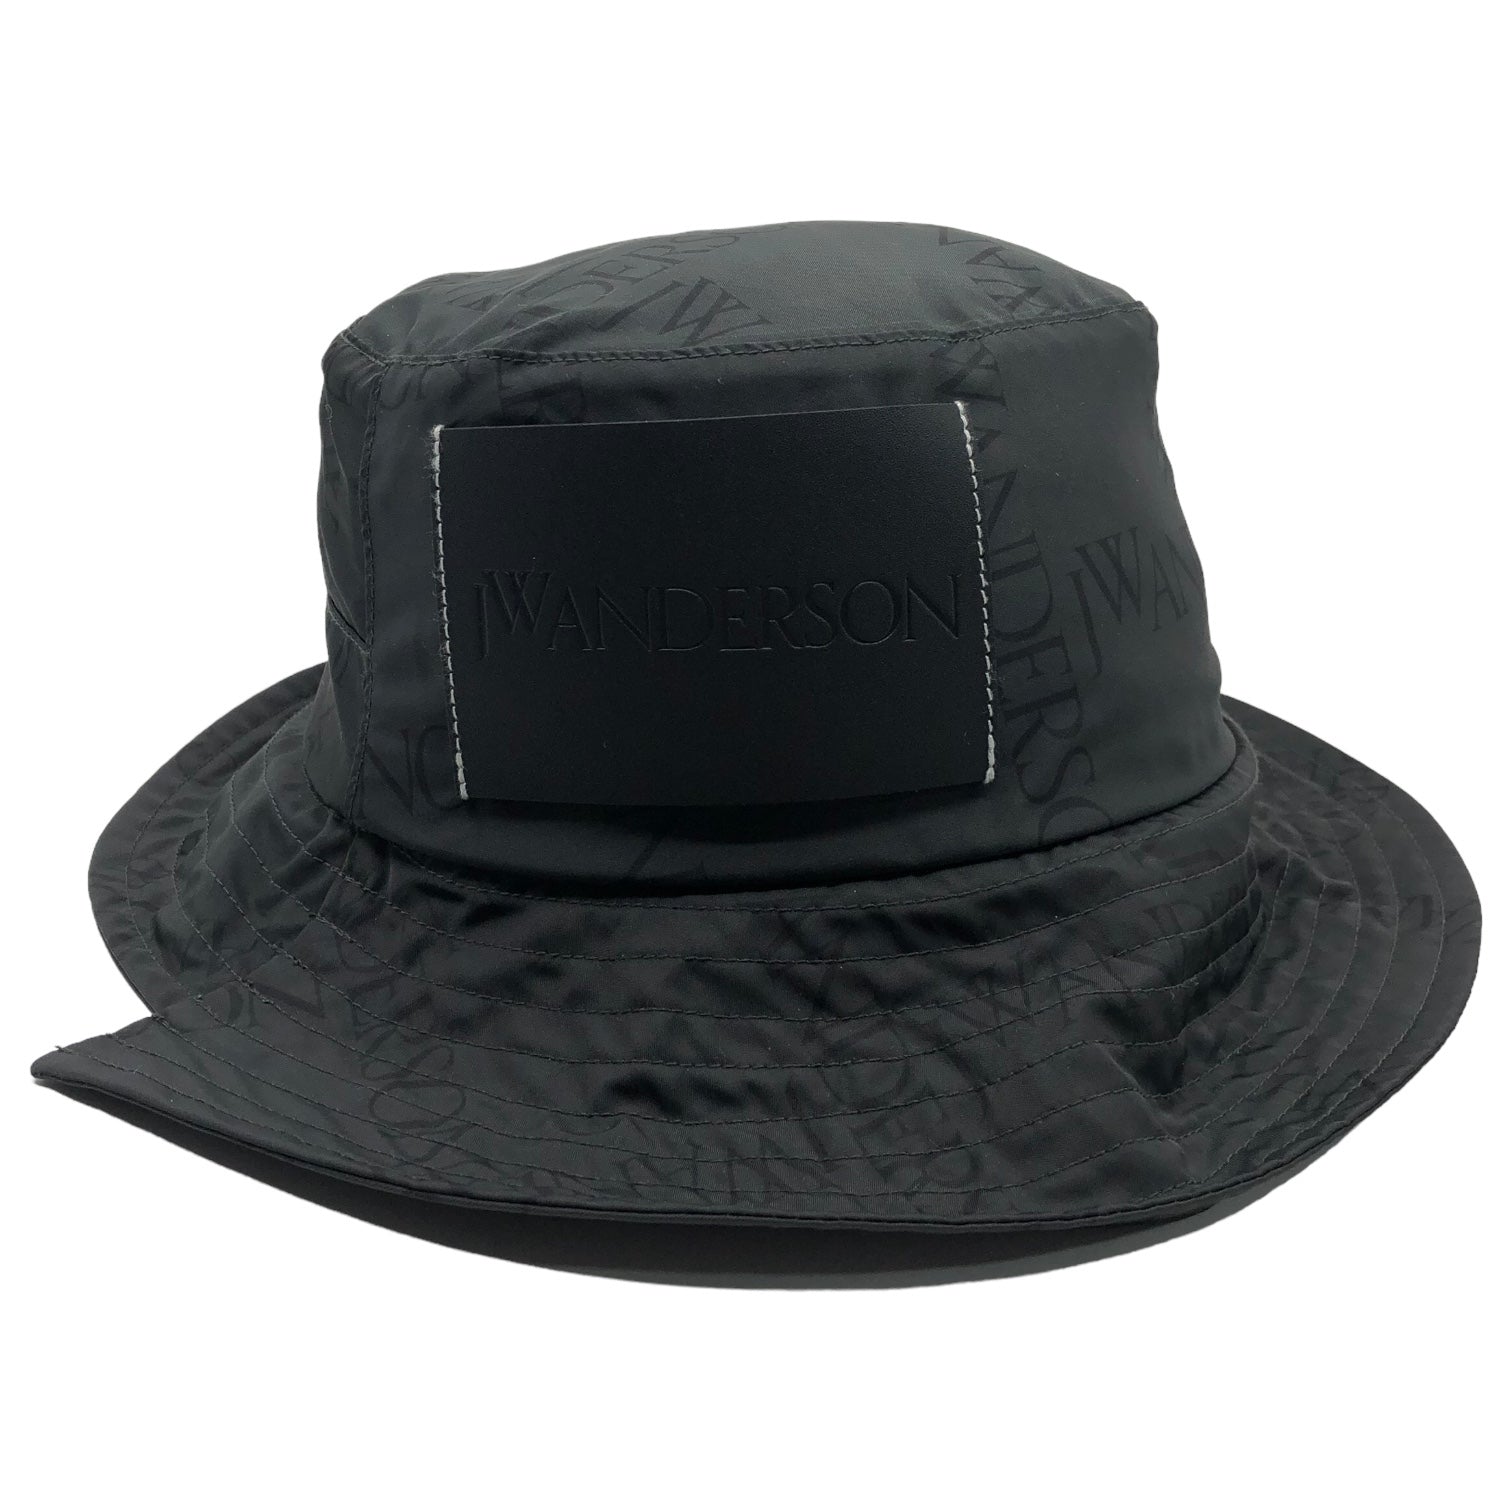 J.W.ANDERSON(ジェイダブリューアンダーソン) logo patch safari hat ロゴパッチ サファリ ハット N1 7GW 58 ブラック バケット